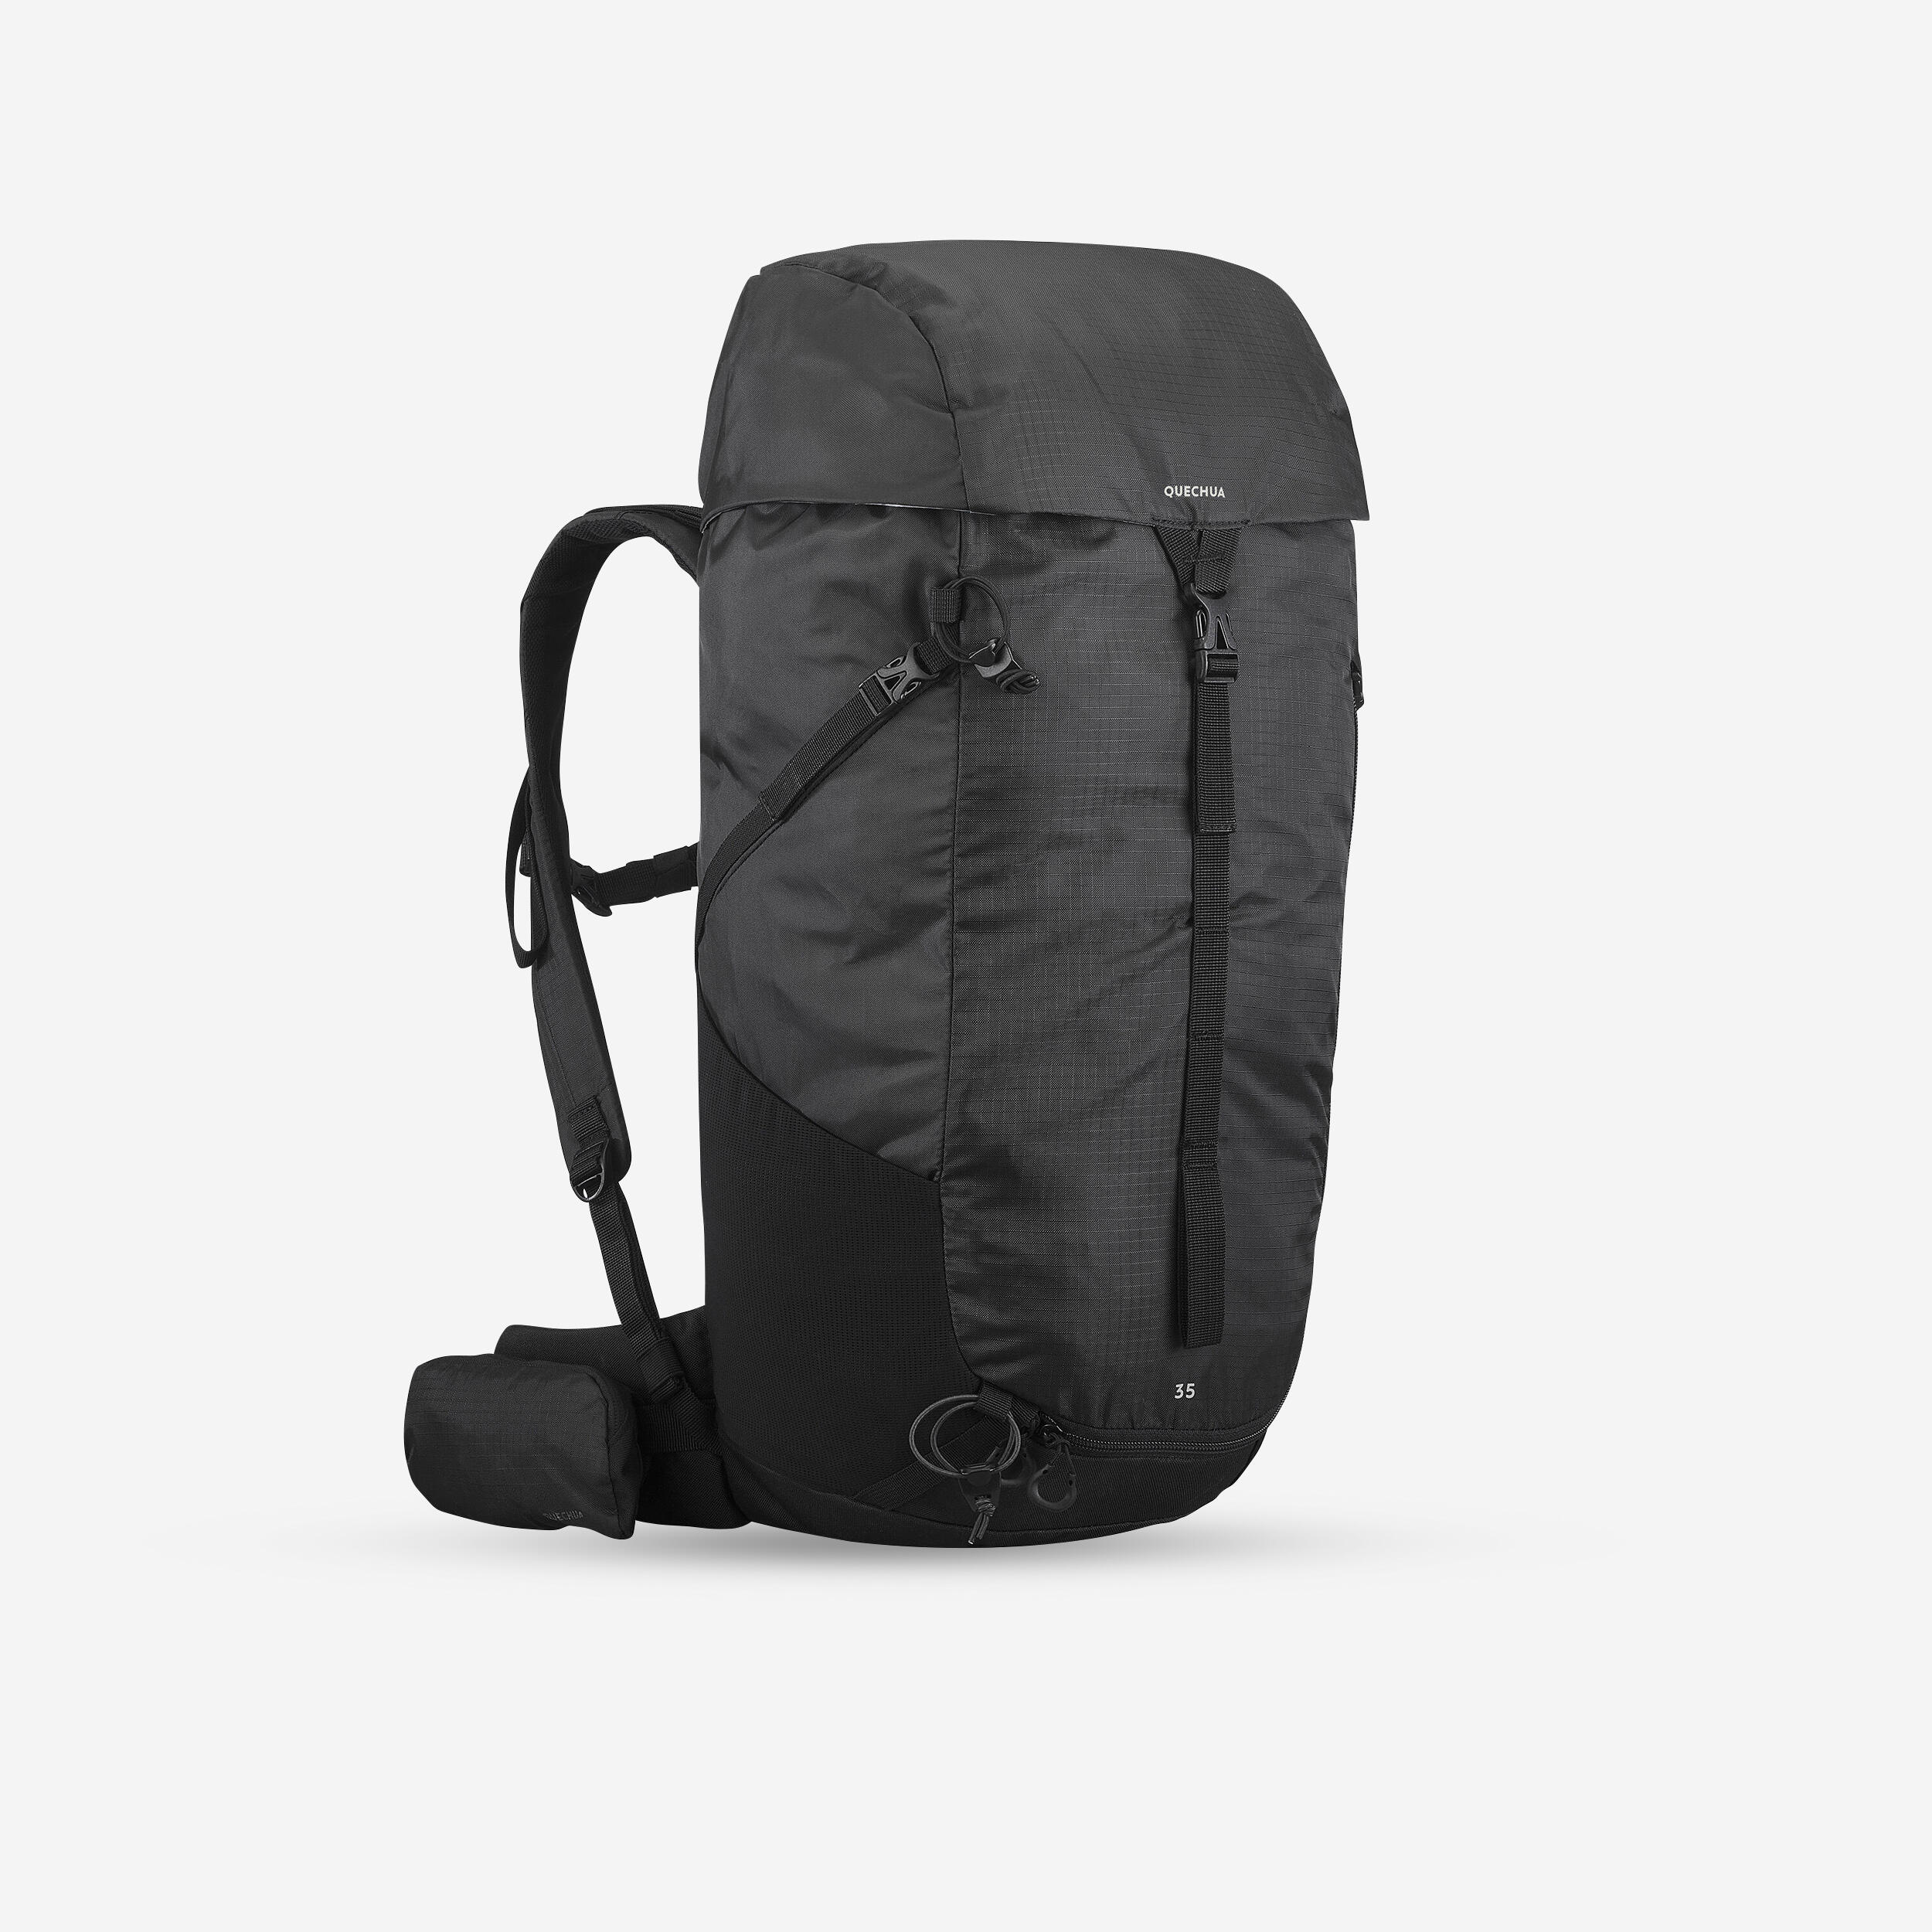 35 L Hiking Backpack - MH 100 Black